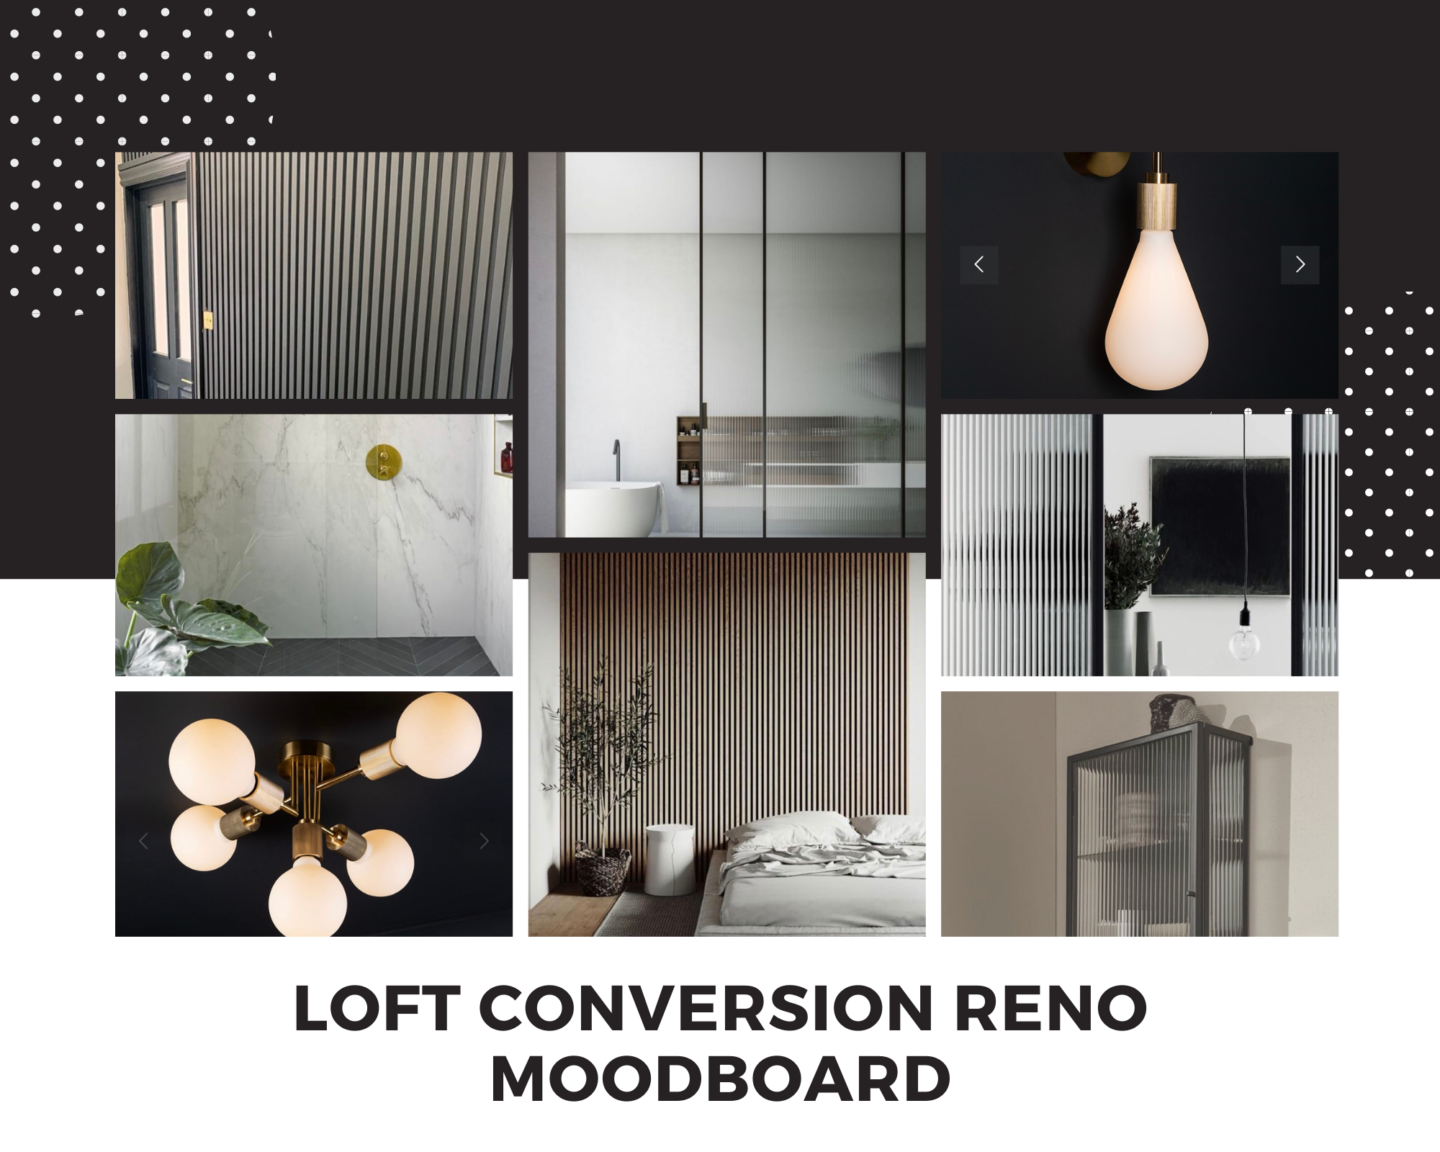 Our Loft Conversion Reno Moodboard